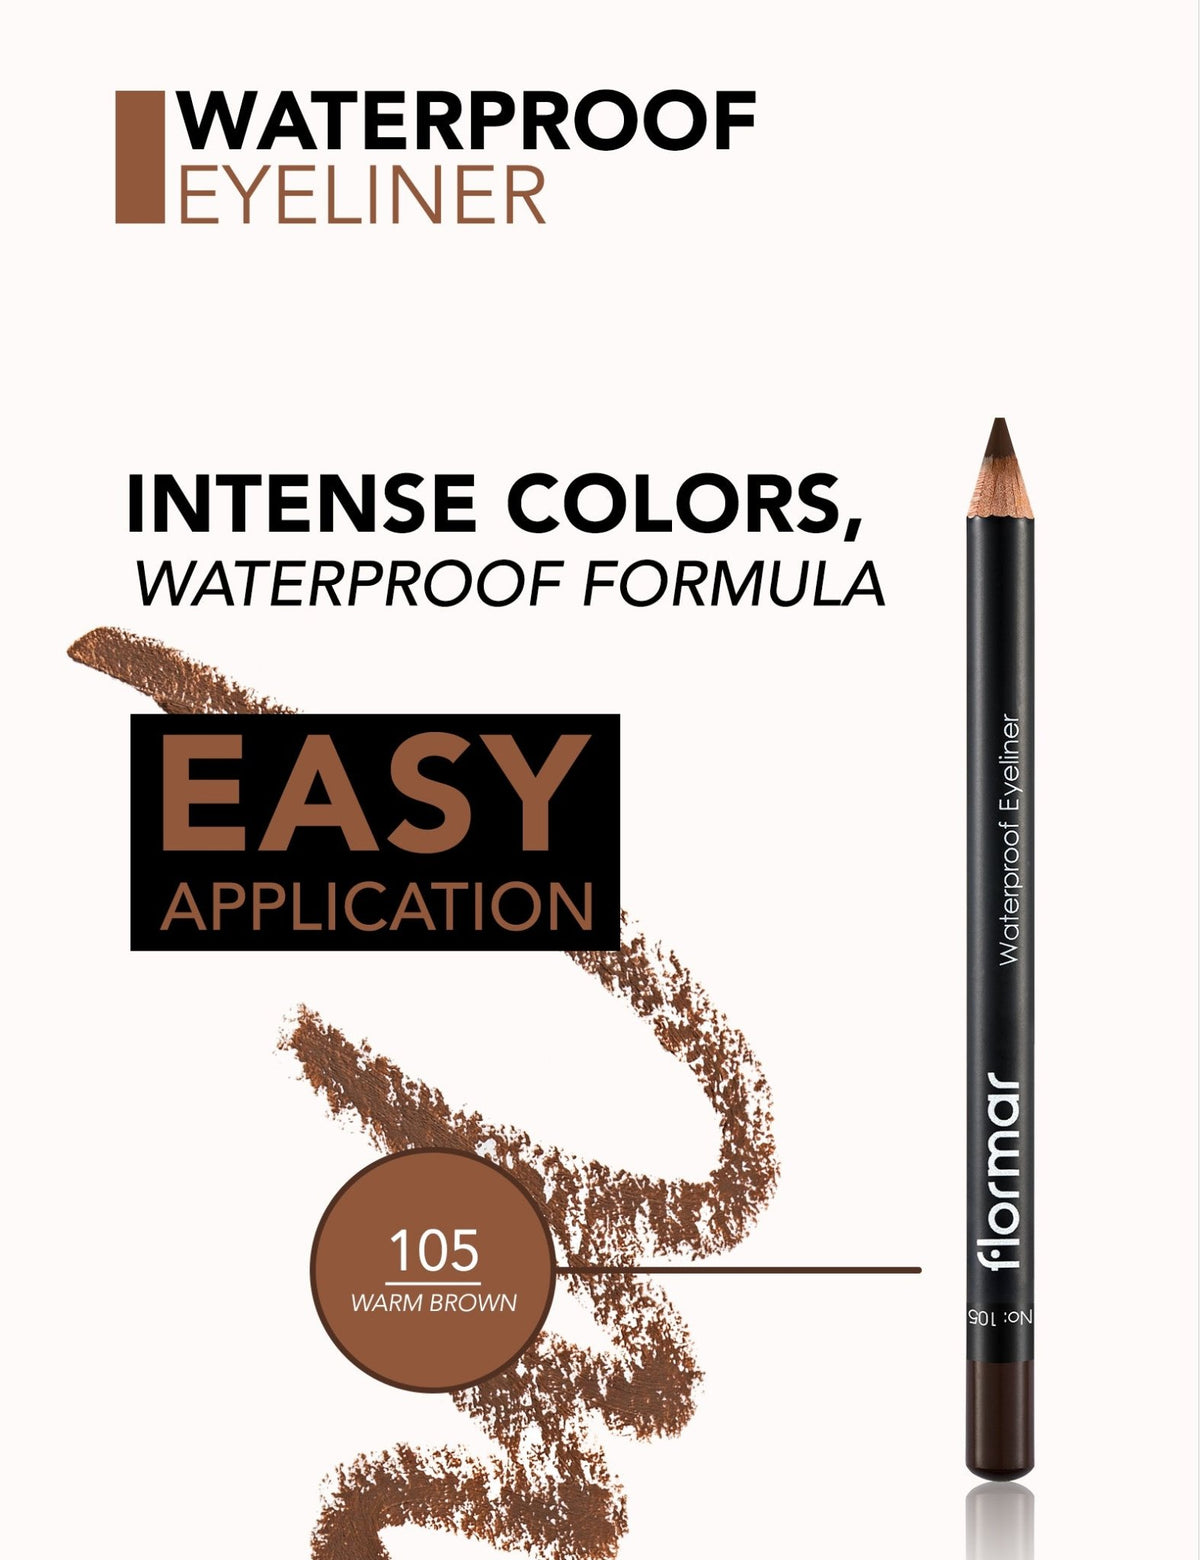 Flormar Waterproof Eyeliner - 105 Warm Brown - AllurebeautypkFlormar Waterproof Eyeliner - 105 Warm Brown